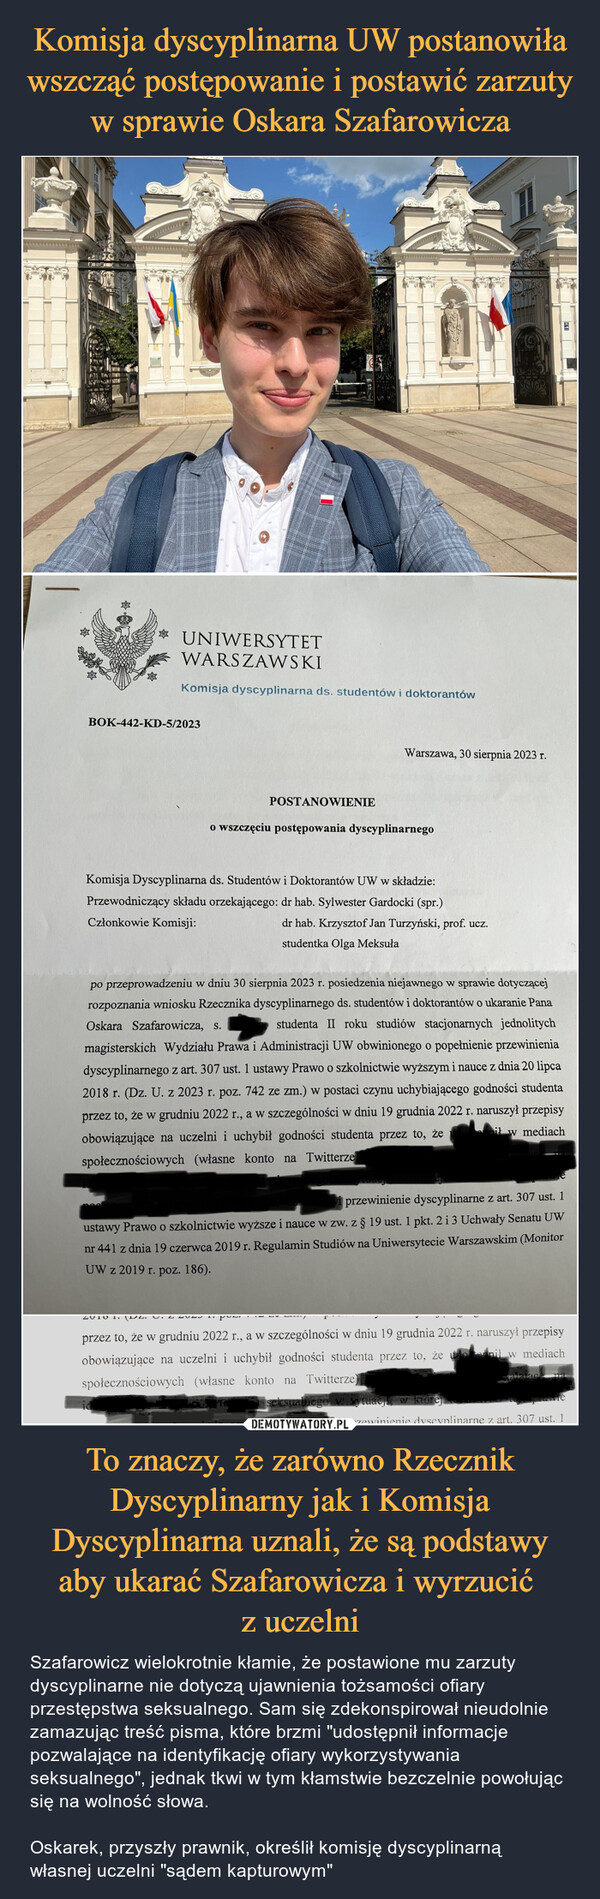 Komisja dyscyplinarna UW postanowiła wszcząć postępowanie i postawić zarzuty w sprawie Oskara Szafarowicza To znaczy, że zarówno Rzecznik Dyscyplinarny jak i Komisja Dyscyplinarna uznali, że są podstawy aby ukarać Szafarowicza i wyrzucić 
z uczelni